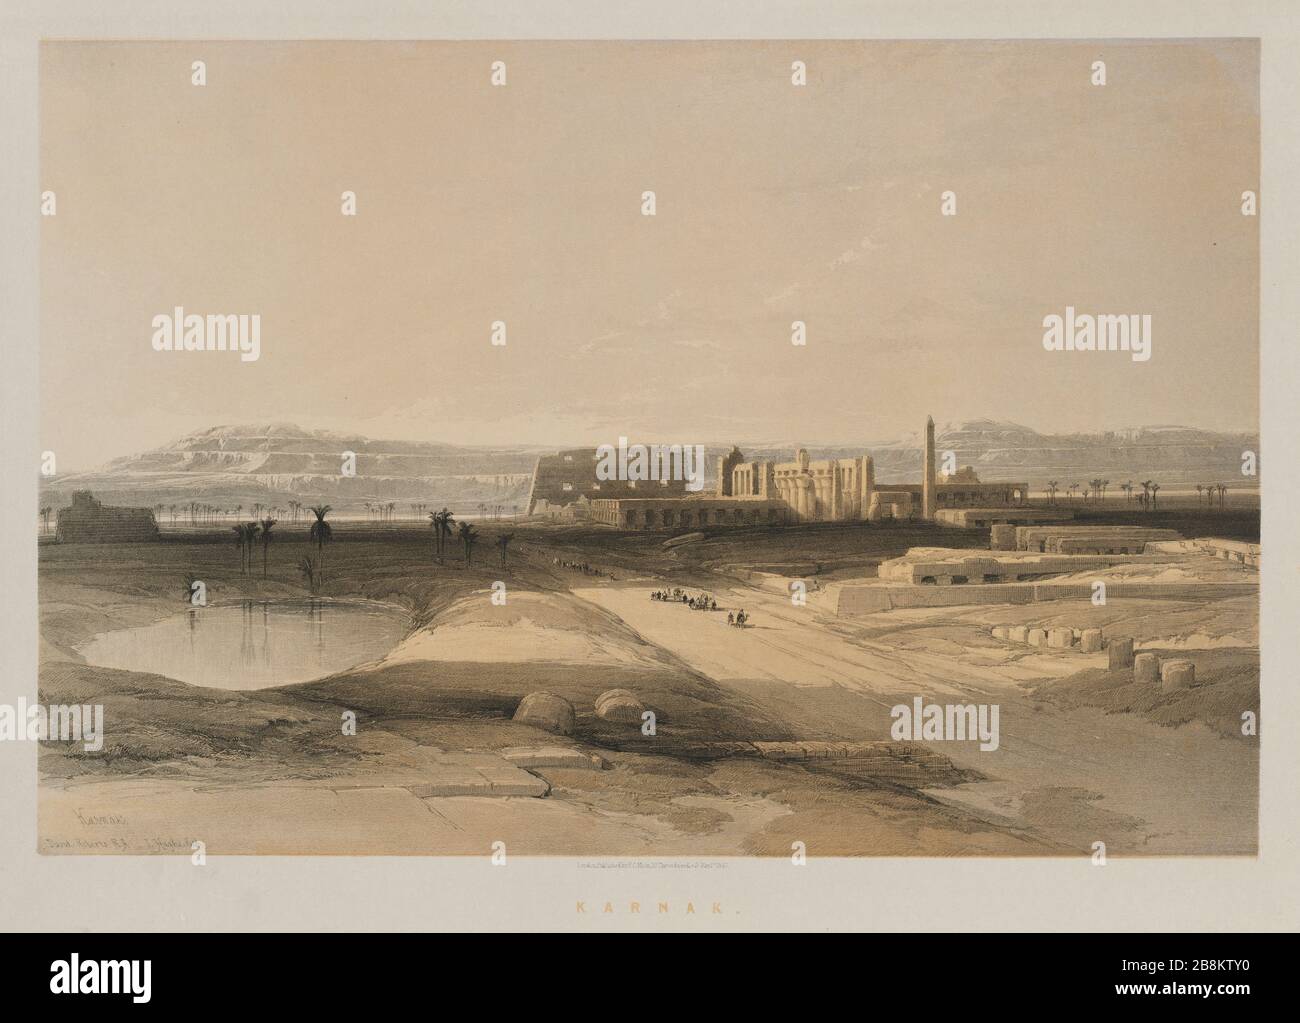 Vista general de Karnak, Egipto de Egipto y Nubia, volumen II: Karnak, 1847. Louis Haghe (británico, 1806-1885), F.G. .Moon, 20 Threadneedle Street, Londres, después de David Roberts (británico, 1796-1864). Litografía a color; hoja: 60.3 x 43.6 cm (23 3/4 x 17 3/16 pulg.); imagen: 48.8 x 32.7 cm (19 3/16 x 12 7/8 pulg.). Foto de stock